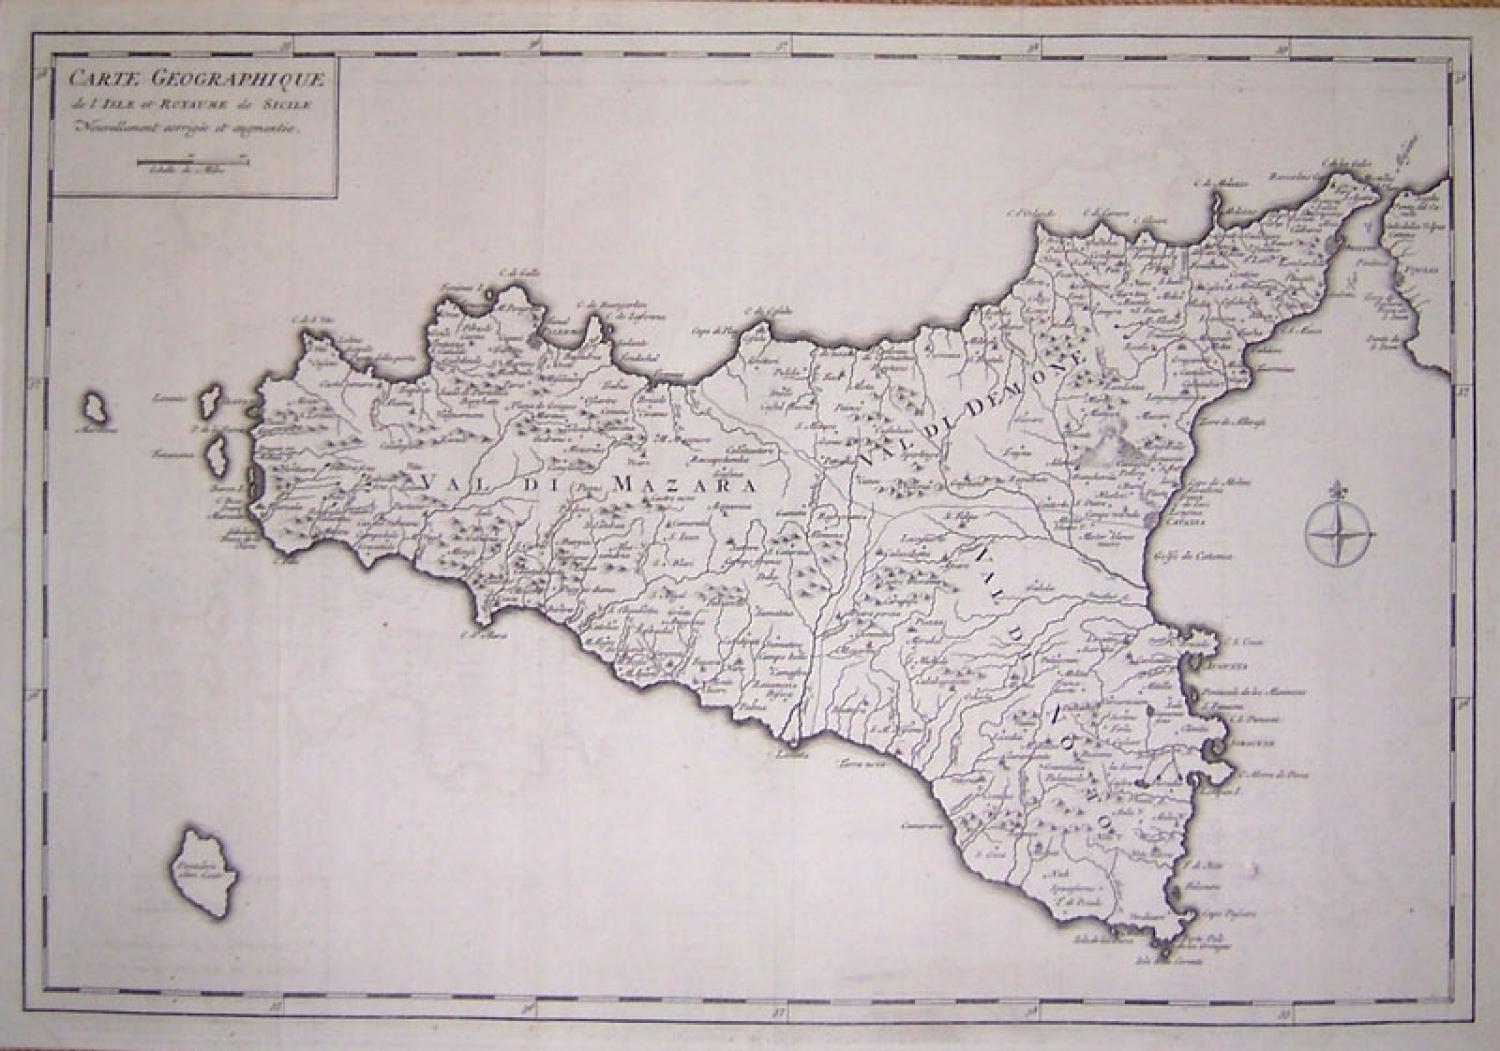 SOLD Carte Geographique de l'Isle et Royaume de Sicile